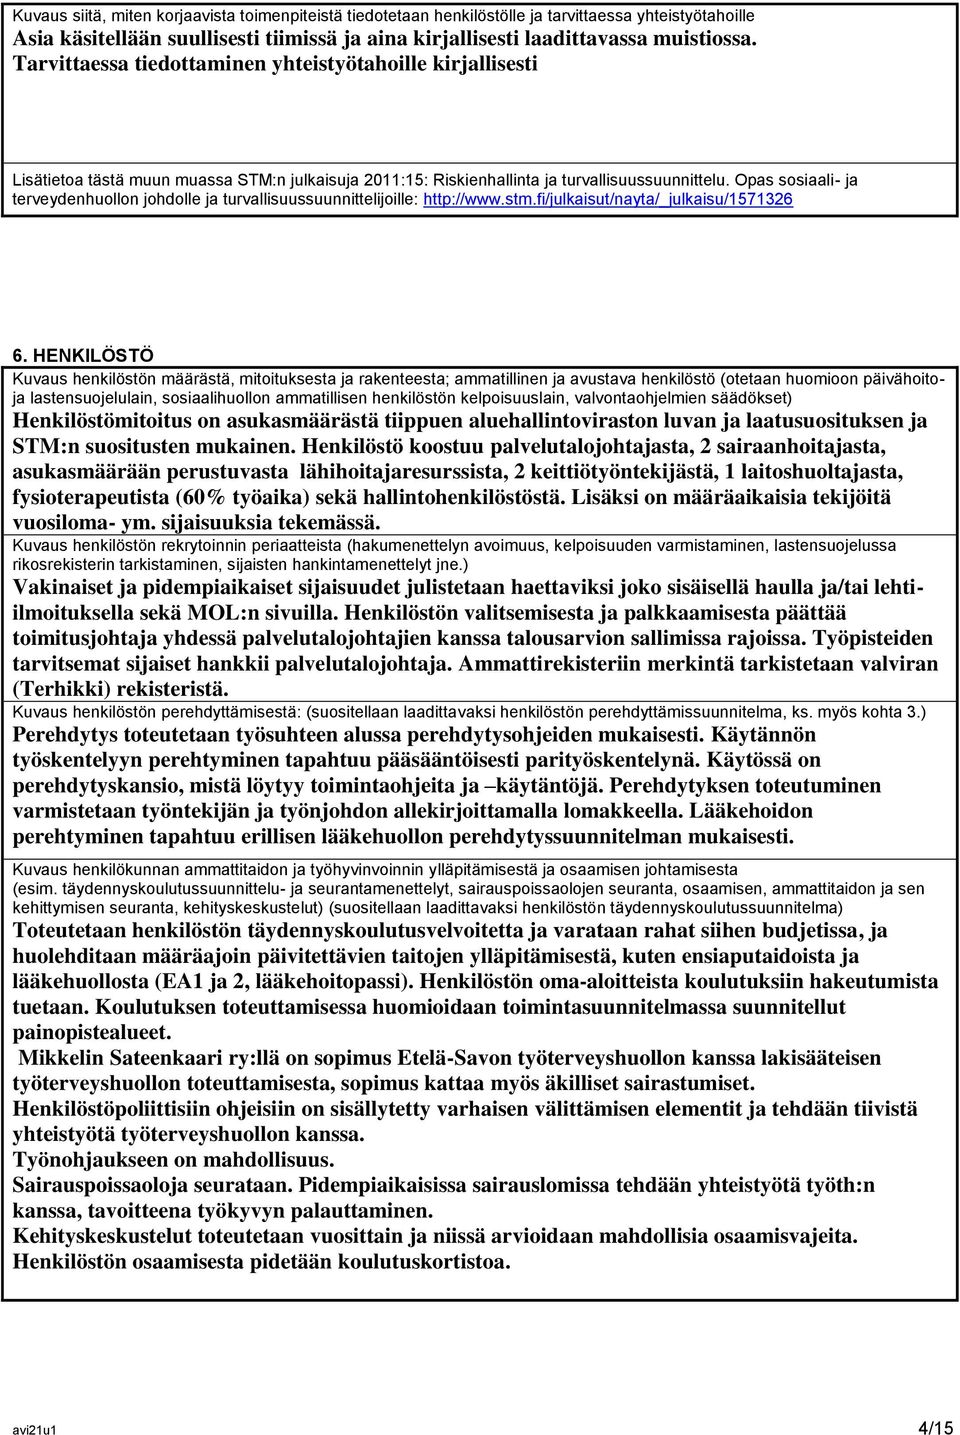 Opas sosiaali- ja terveydenhuollon johdolle ja turvallisuussuunnittelijoille: http://www.stm.fi/julkaisut/nayta/_julkaisu/1571326 6.